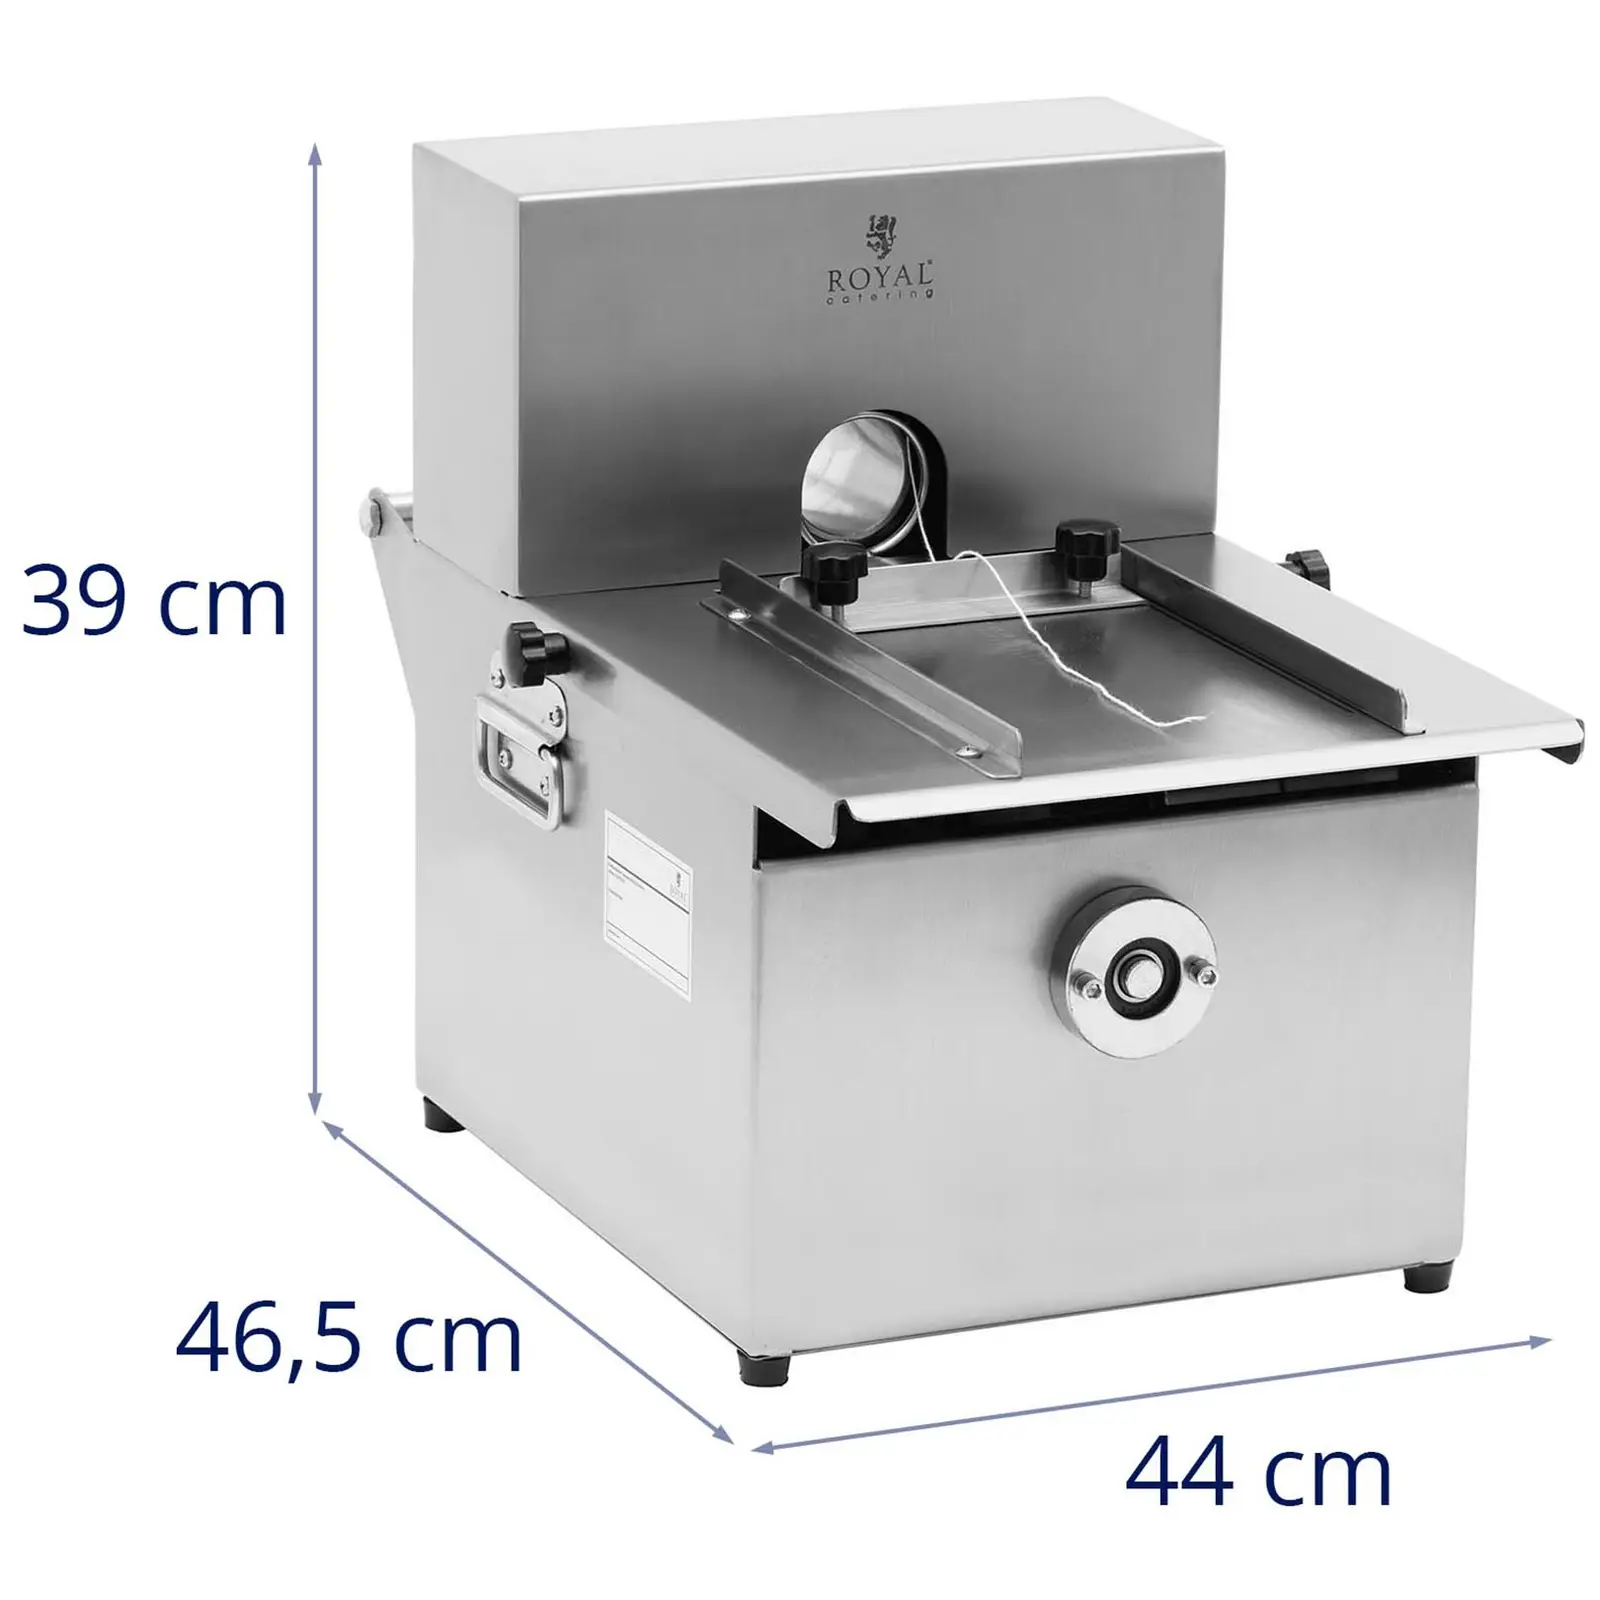 Máquina de atar salsichas - manual - aço inoxidável - 3 carretéis de fio de salsicha - Royal Catering